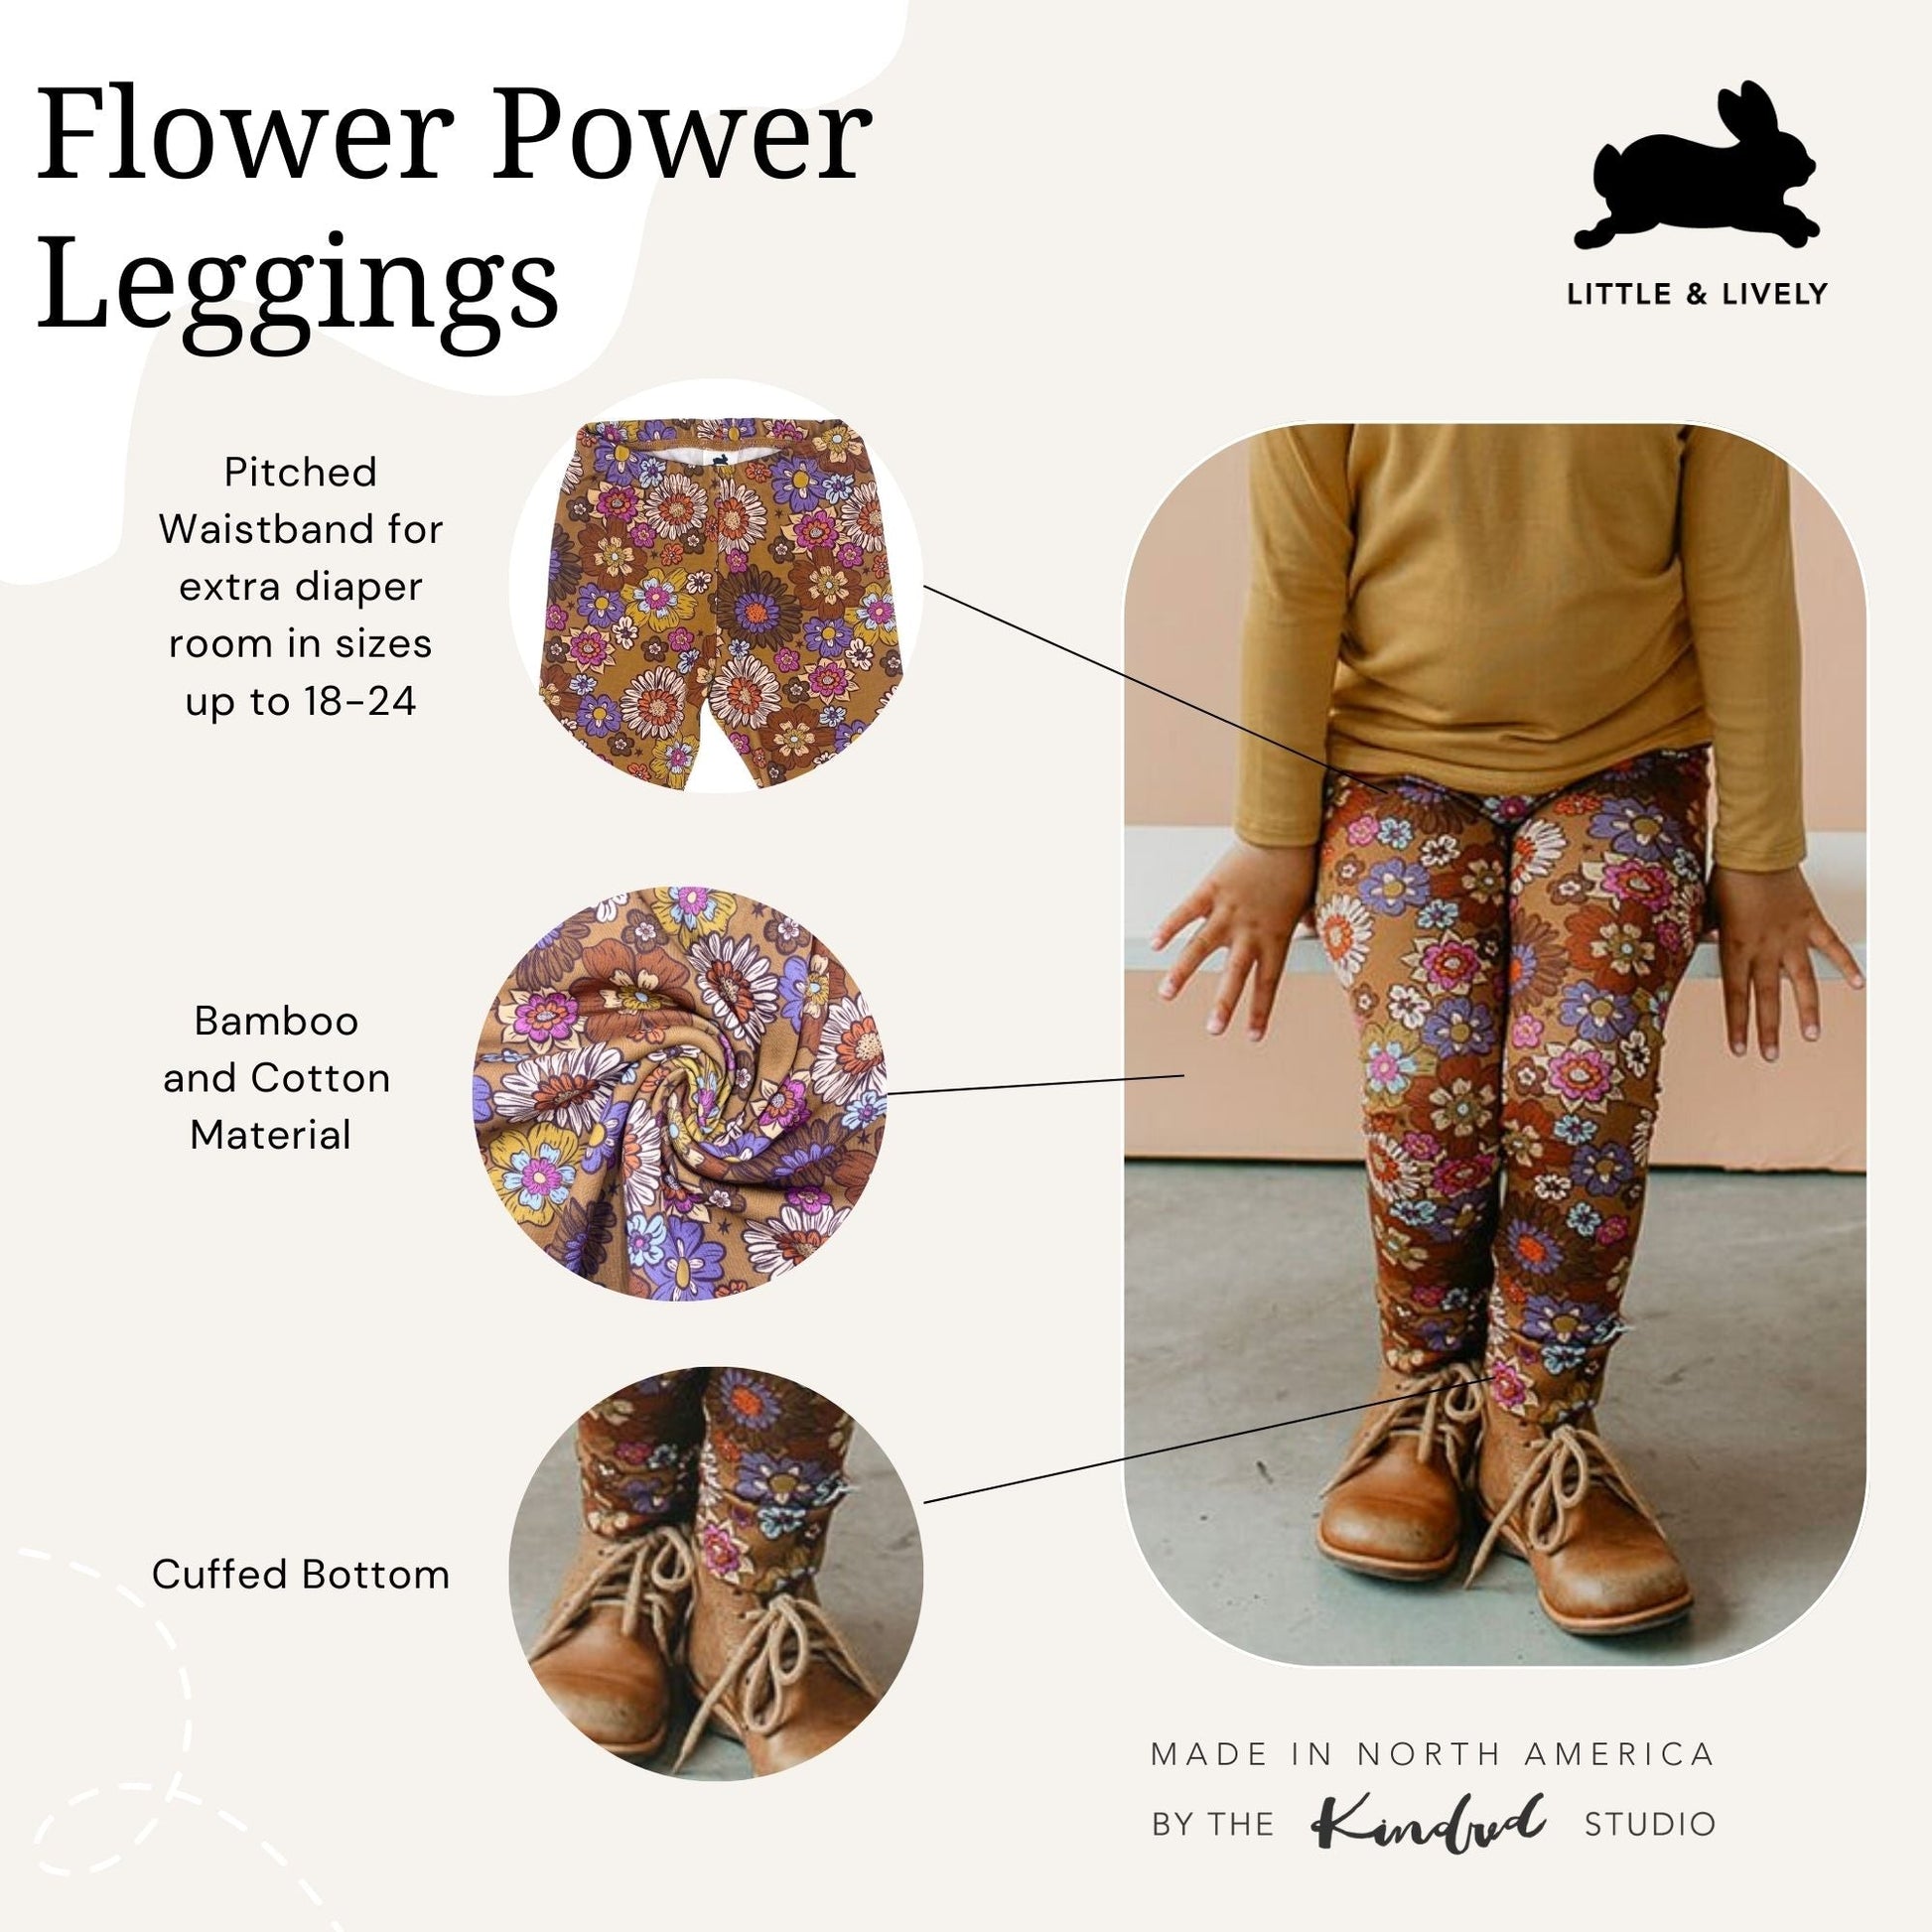 LuLaRoe women's floral skirt size M – Solé Resale Boutique